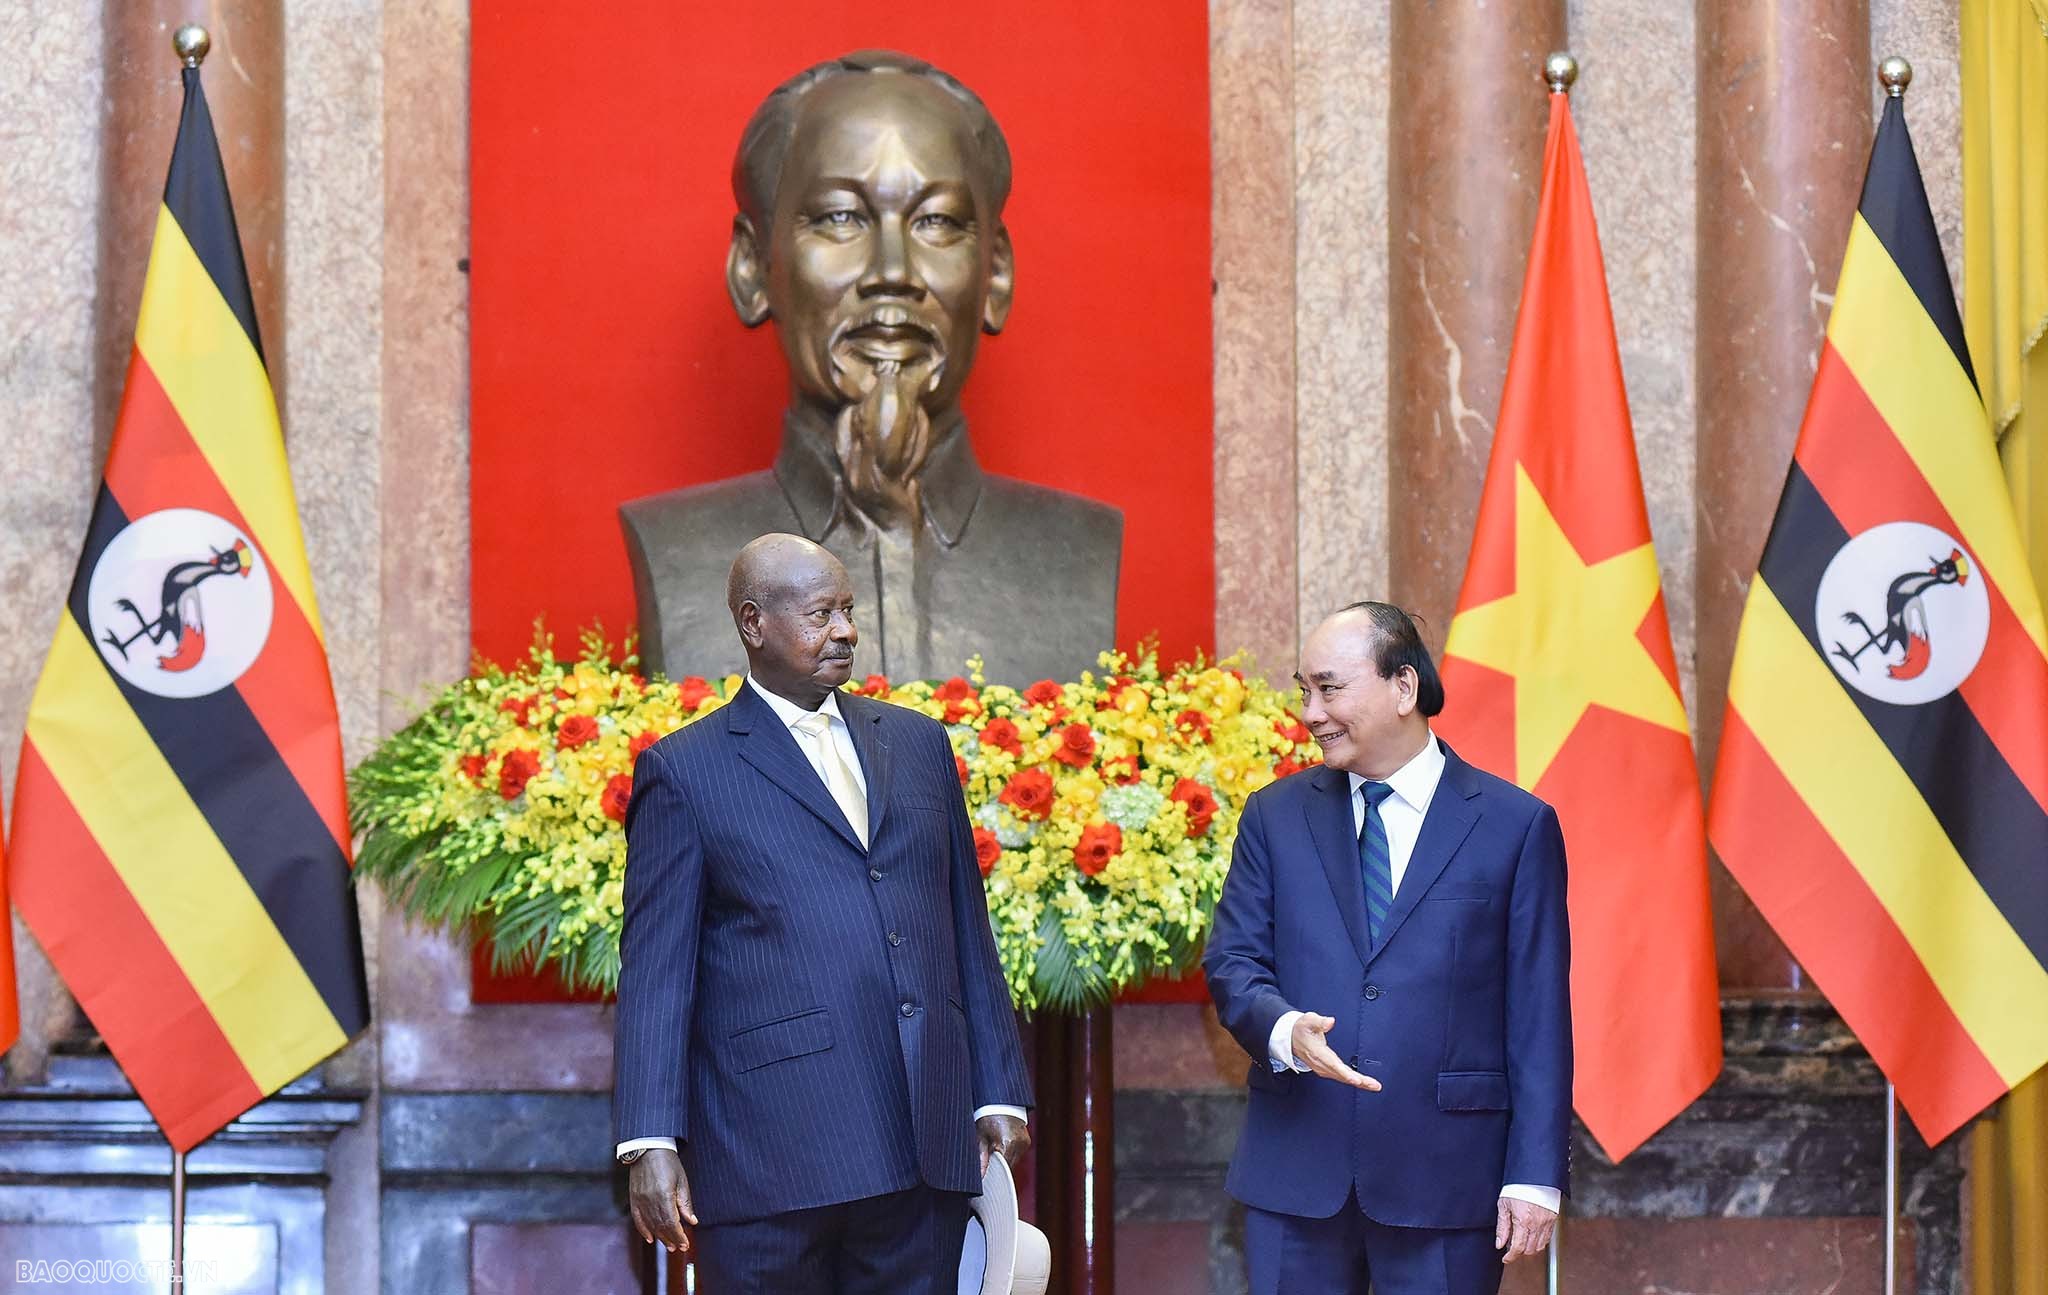 Tổng thống Yoweri Kaguta Museveni có nhiều thiện cảm với Việt Nam. Ông nắm khá rõ lịch sử cuộc kháng chiến chống Mỹ, cứu nước anh dũng của nhân dân Việt Nam; đặc biệt ngưỡng mộ Chủ tịch Hồ Chí Minh và Đại tướng Võ Nguyên Giáp; đã từng tham gia Ủy ban Ugan